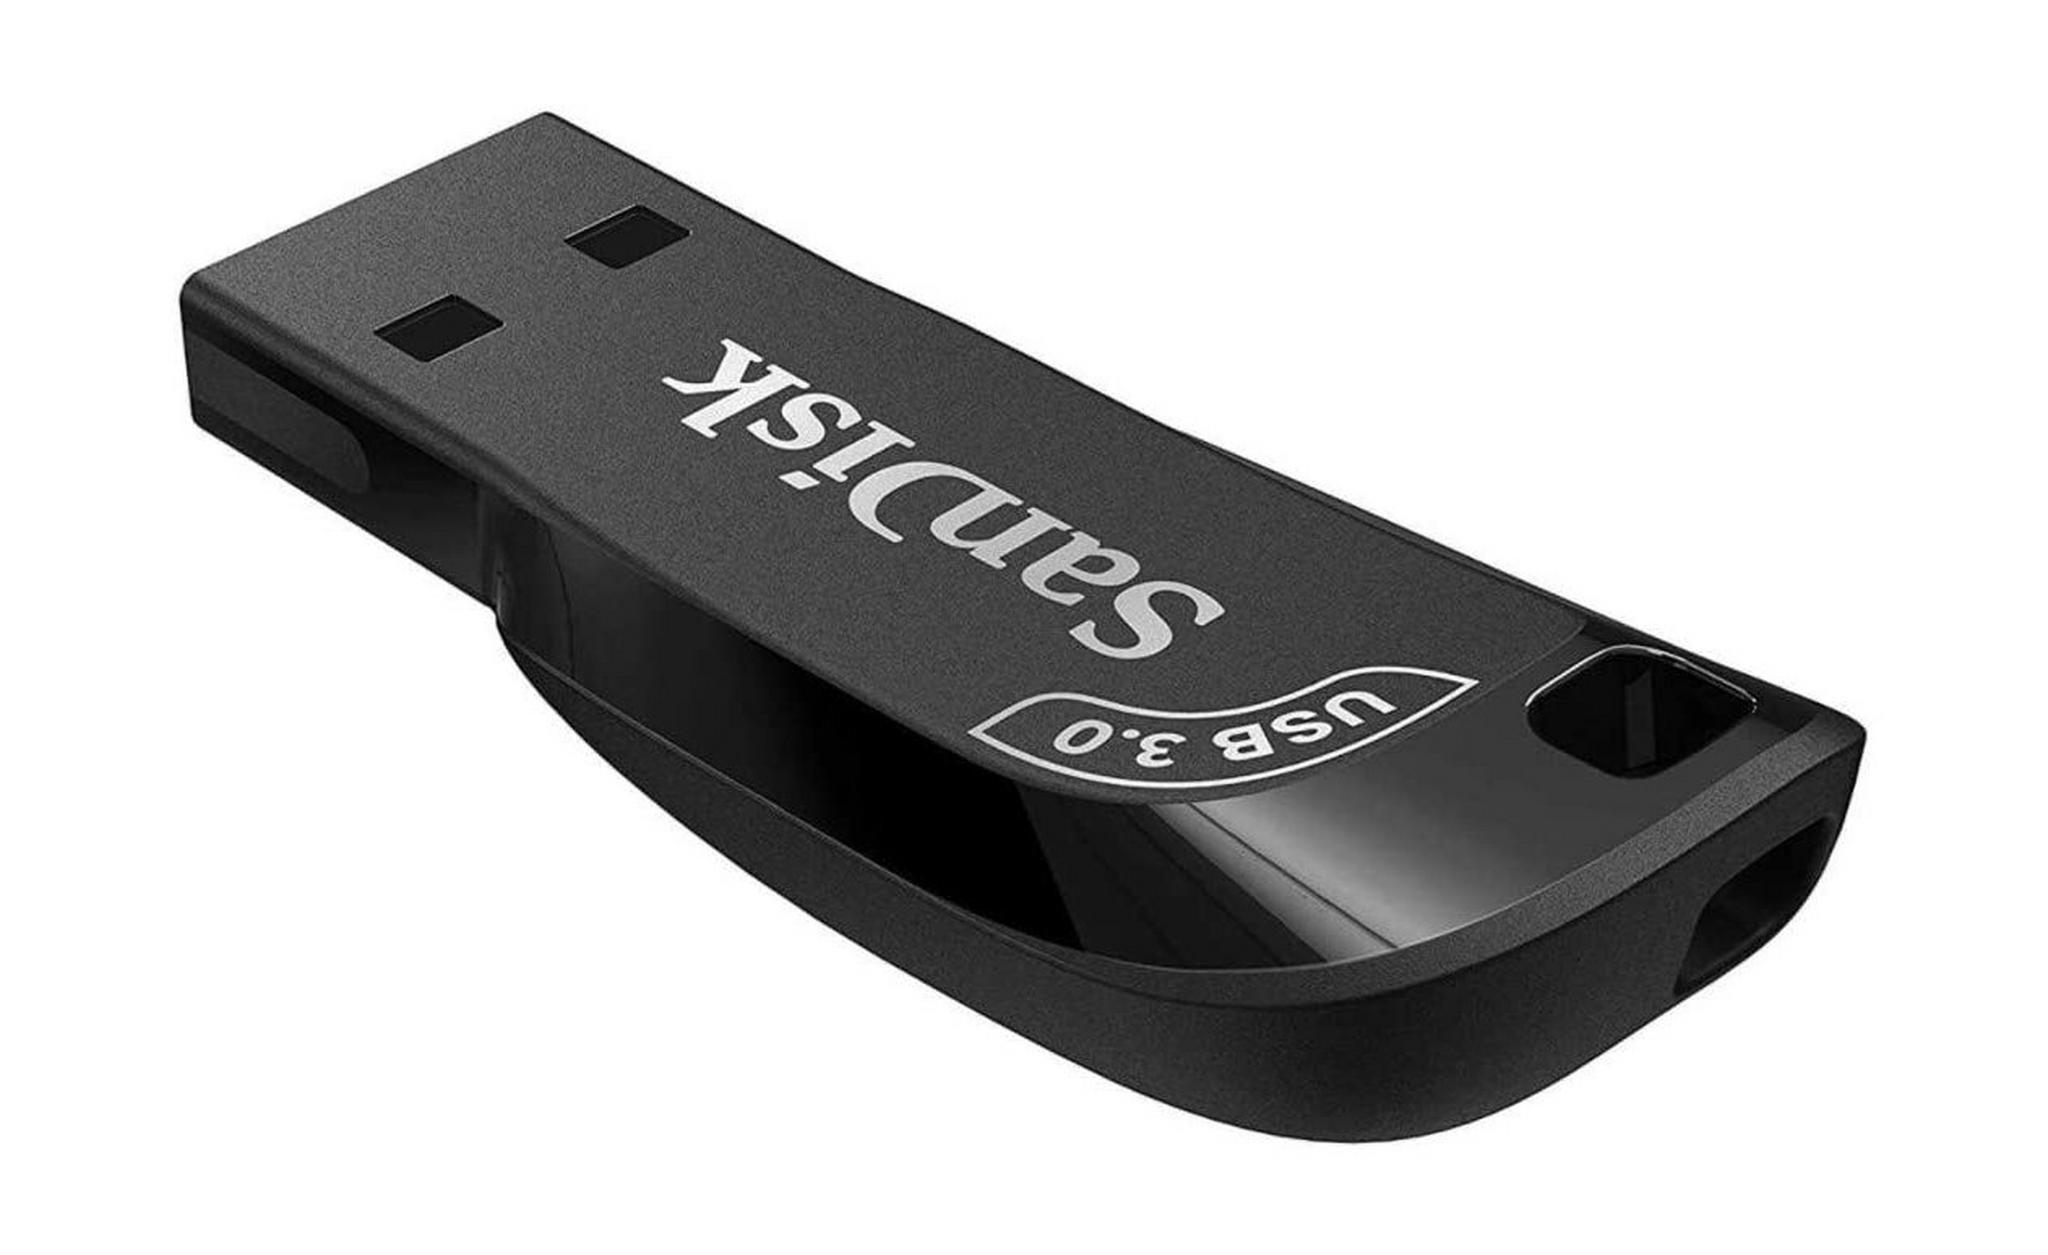 SanDisk Ultra Shift 32GB USB 3.0 Flash Drive